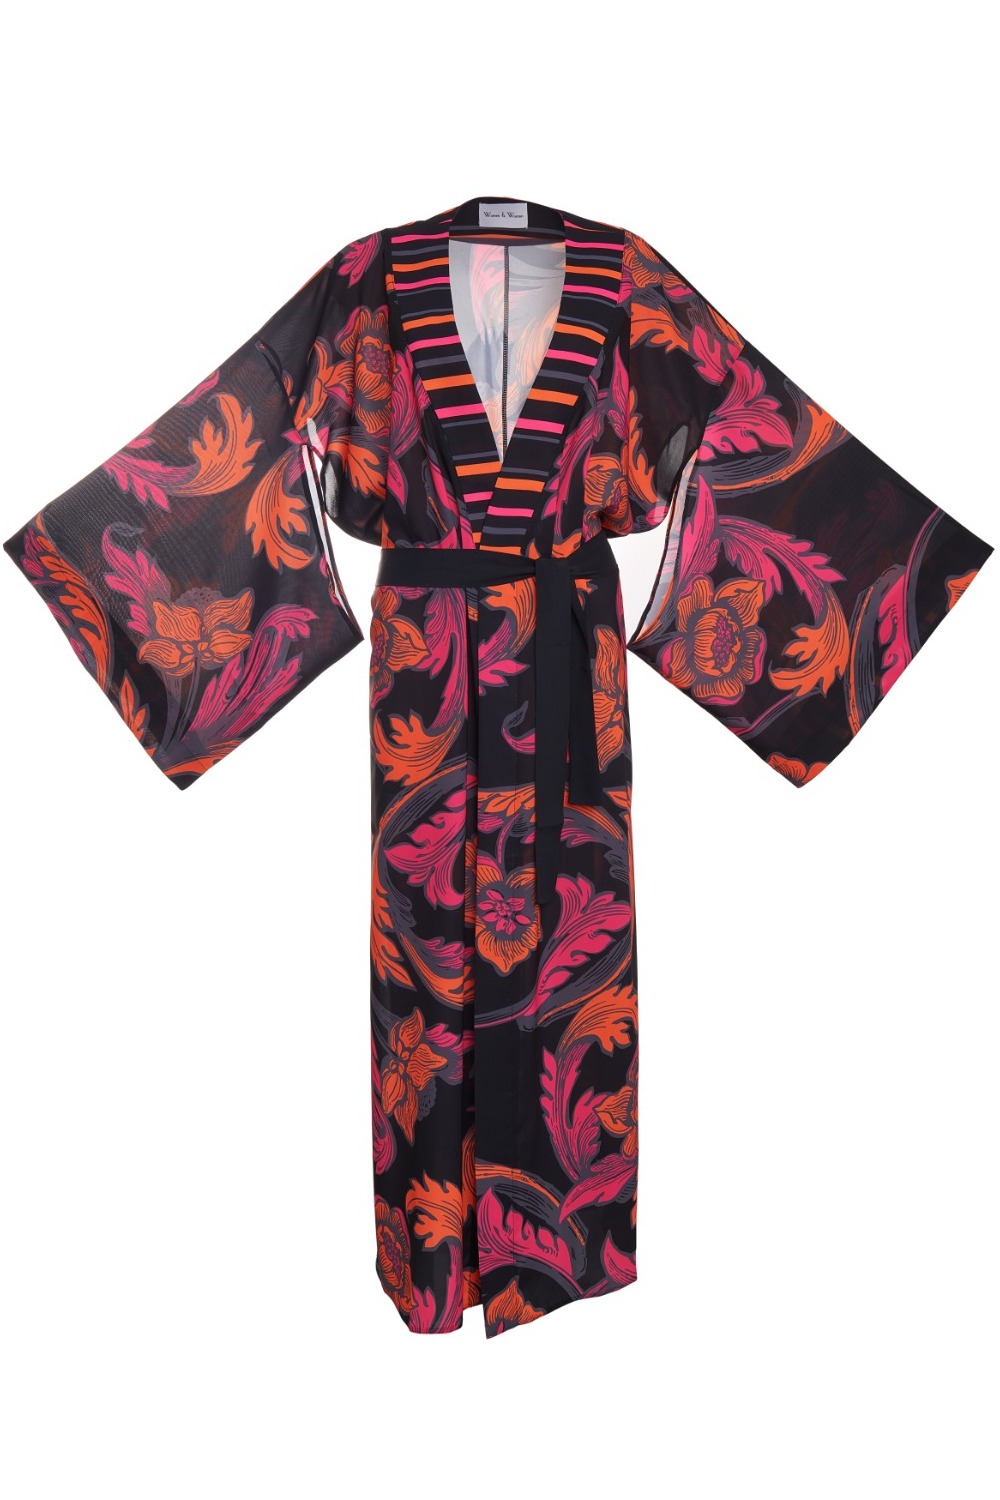 Aden Kimono